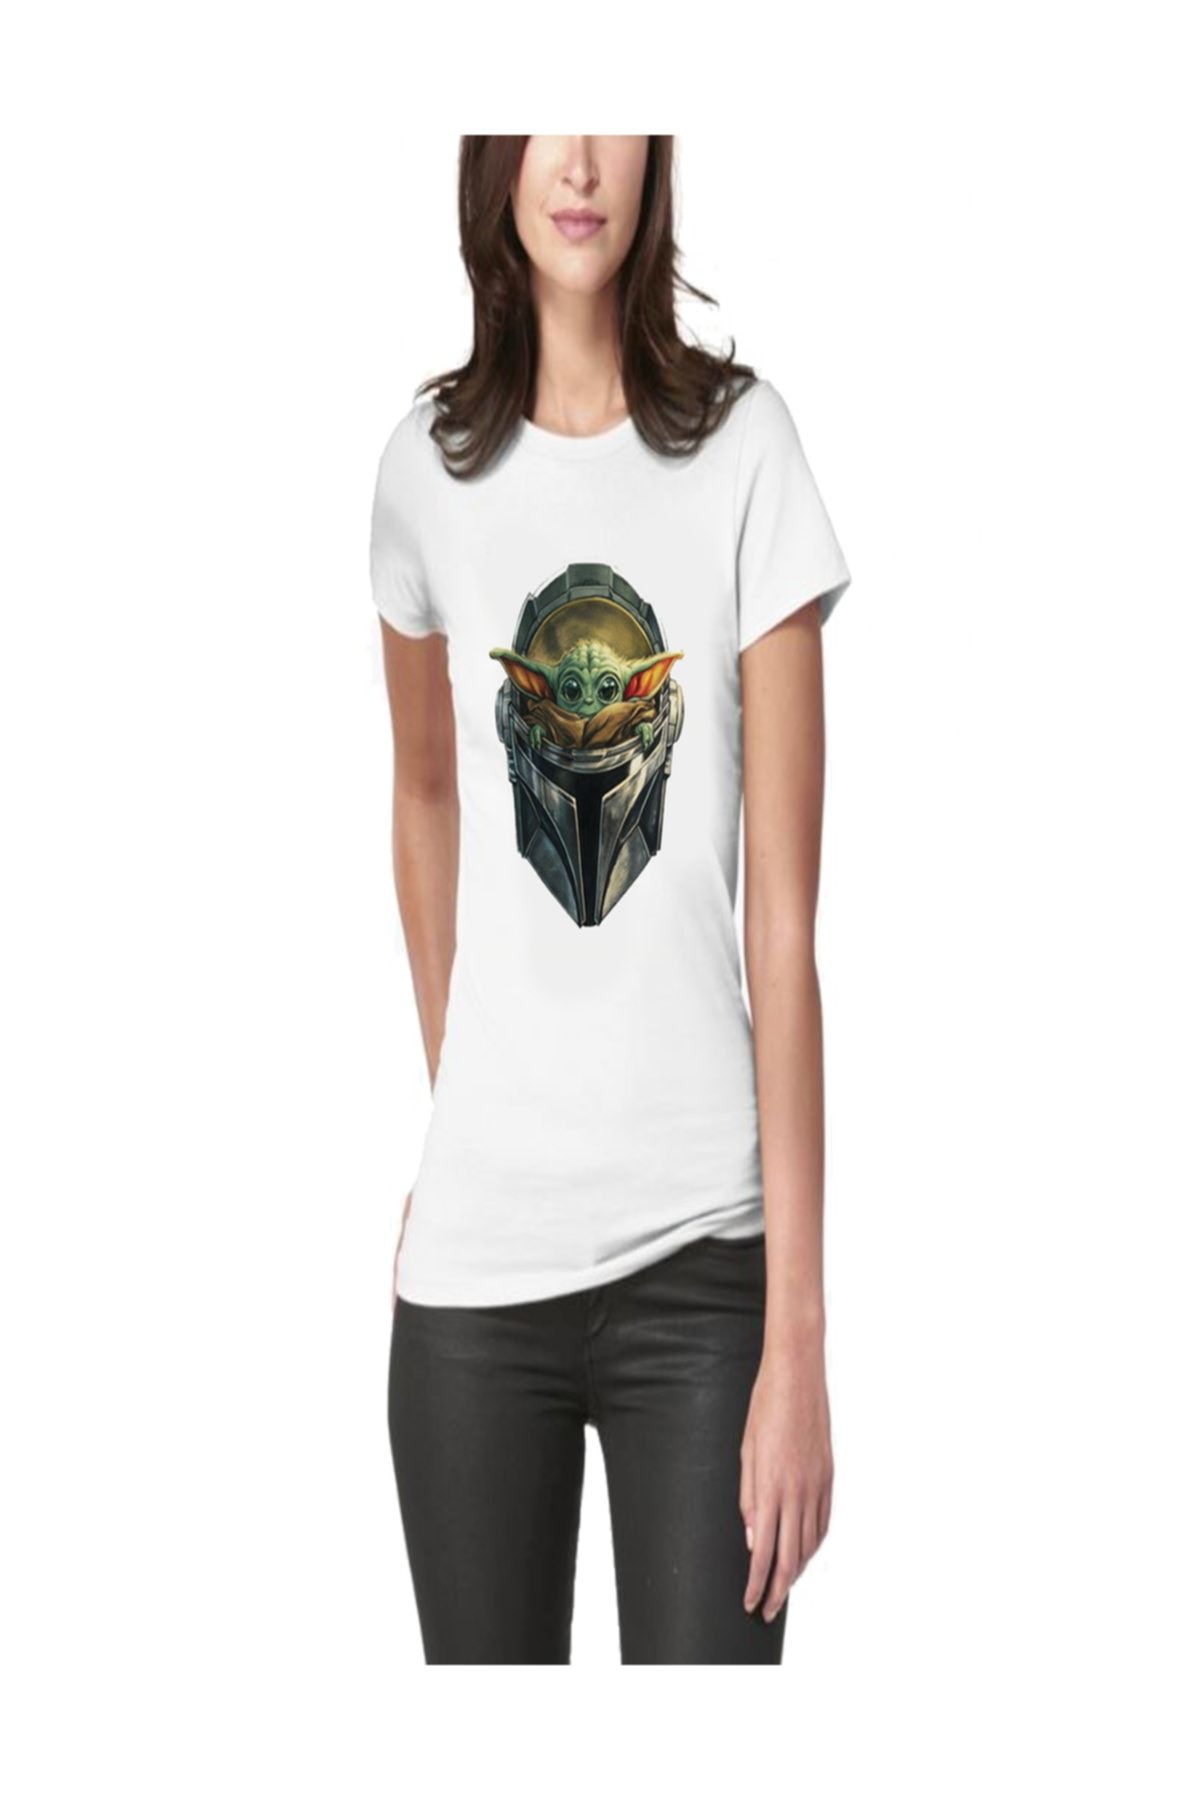 Art T-Shirt Baby Yoda Kadın Tişört